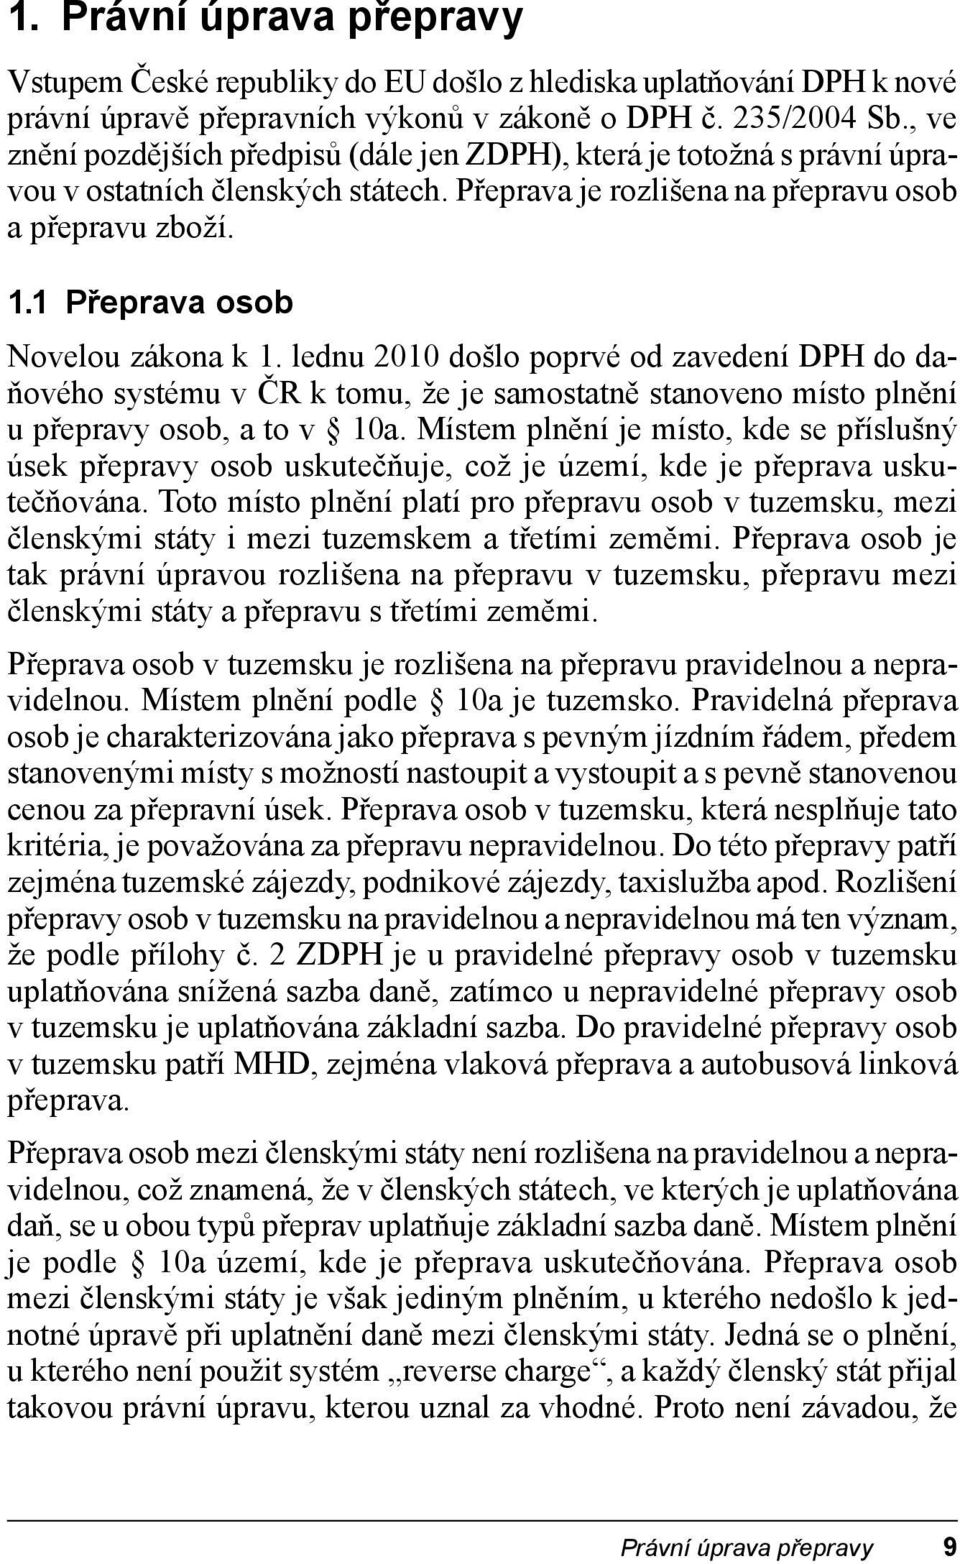 1 Přeprava osob Novelou zákona k 1. lednu 2010 došlo poprvé od zavedení DPH do daňového systému v ČR k tomu, že je samostatně stanoveno místo plnění u přepravy osob, a to v 10a.